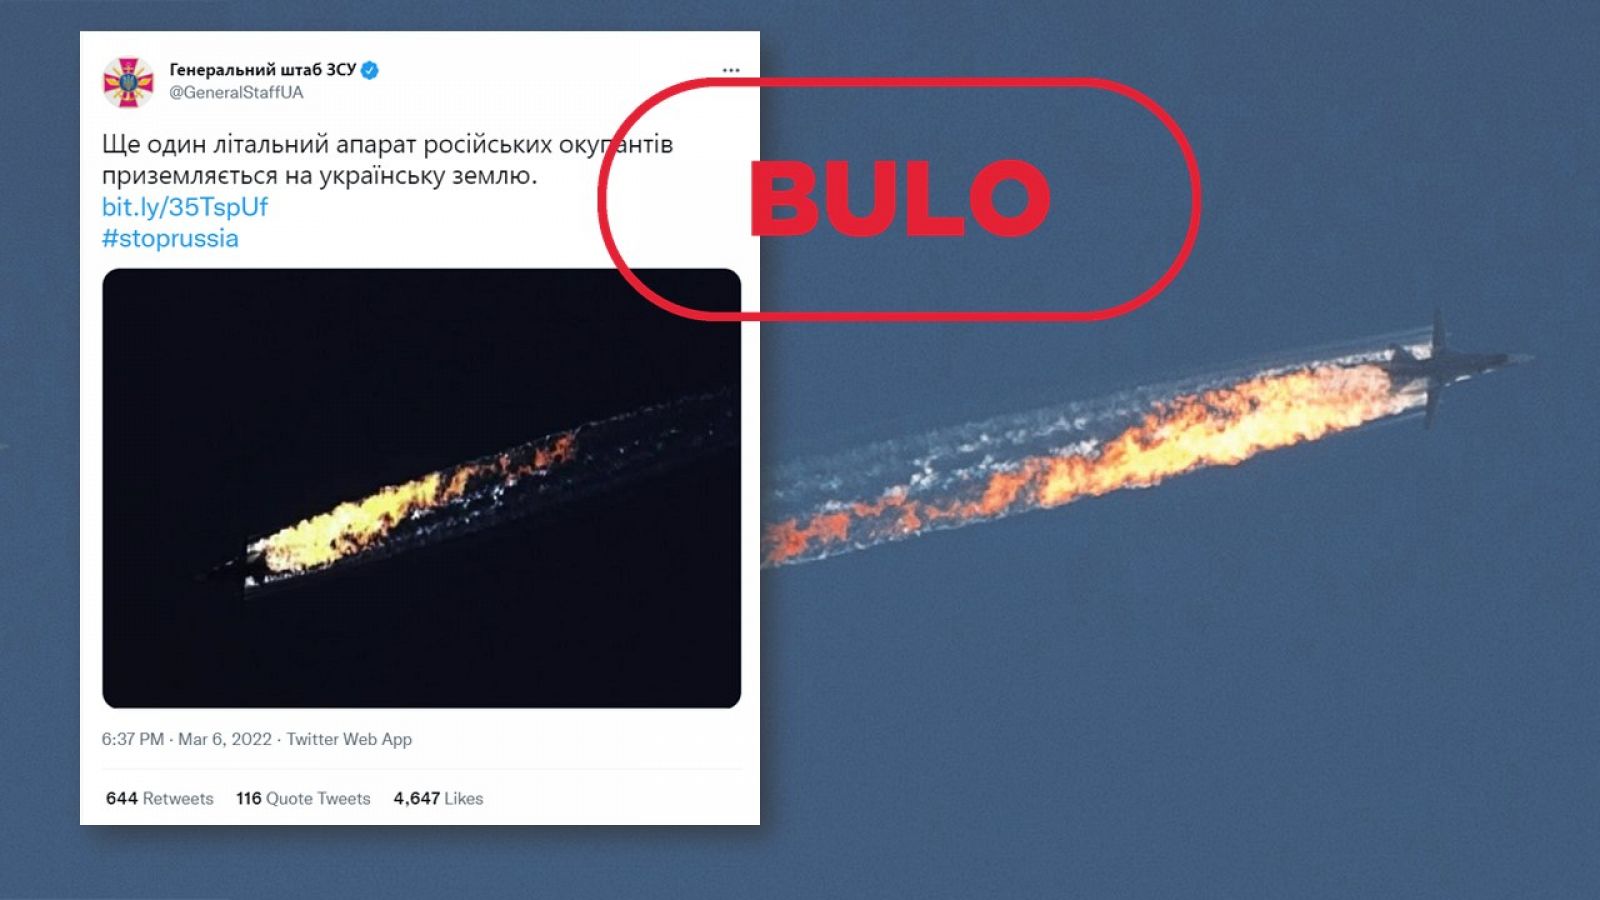 Imagen manipulada del avión ruso derribado en 2015 con el sello bulo